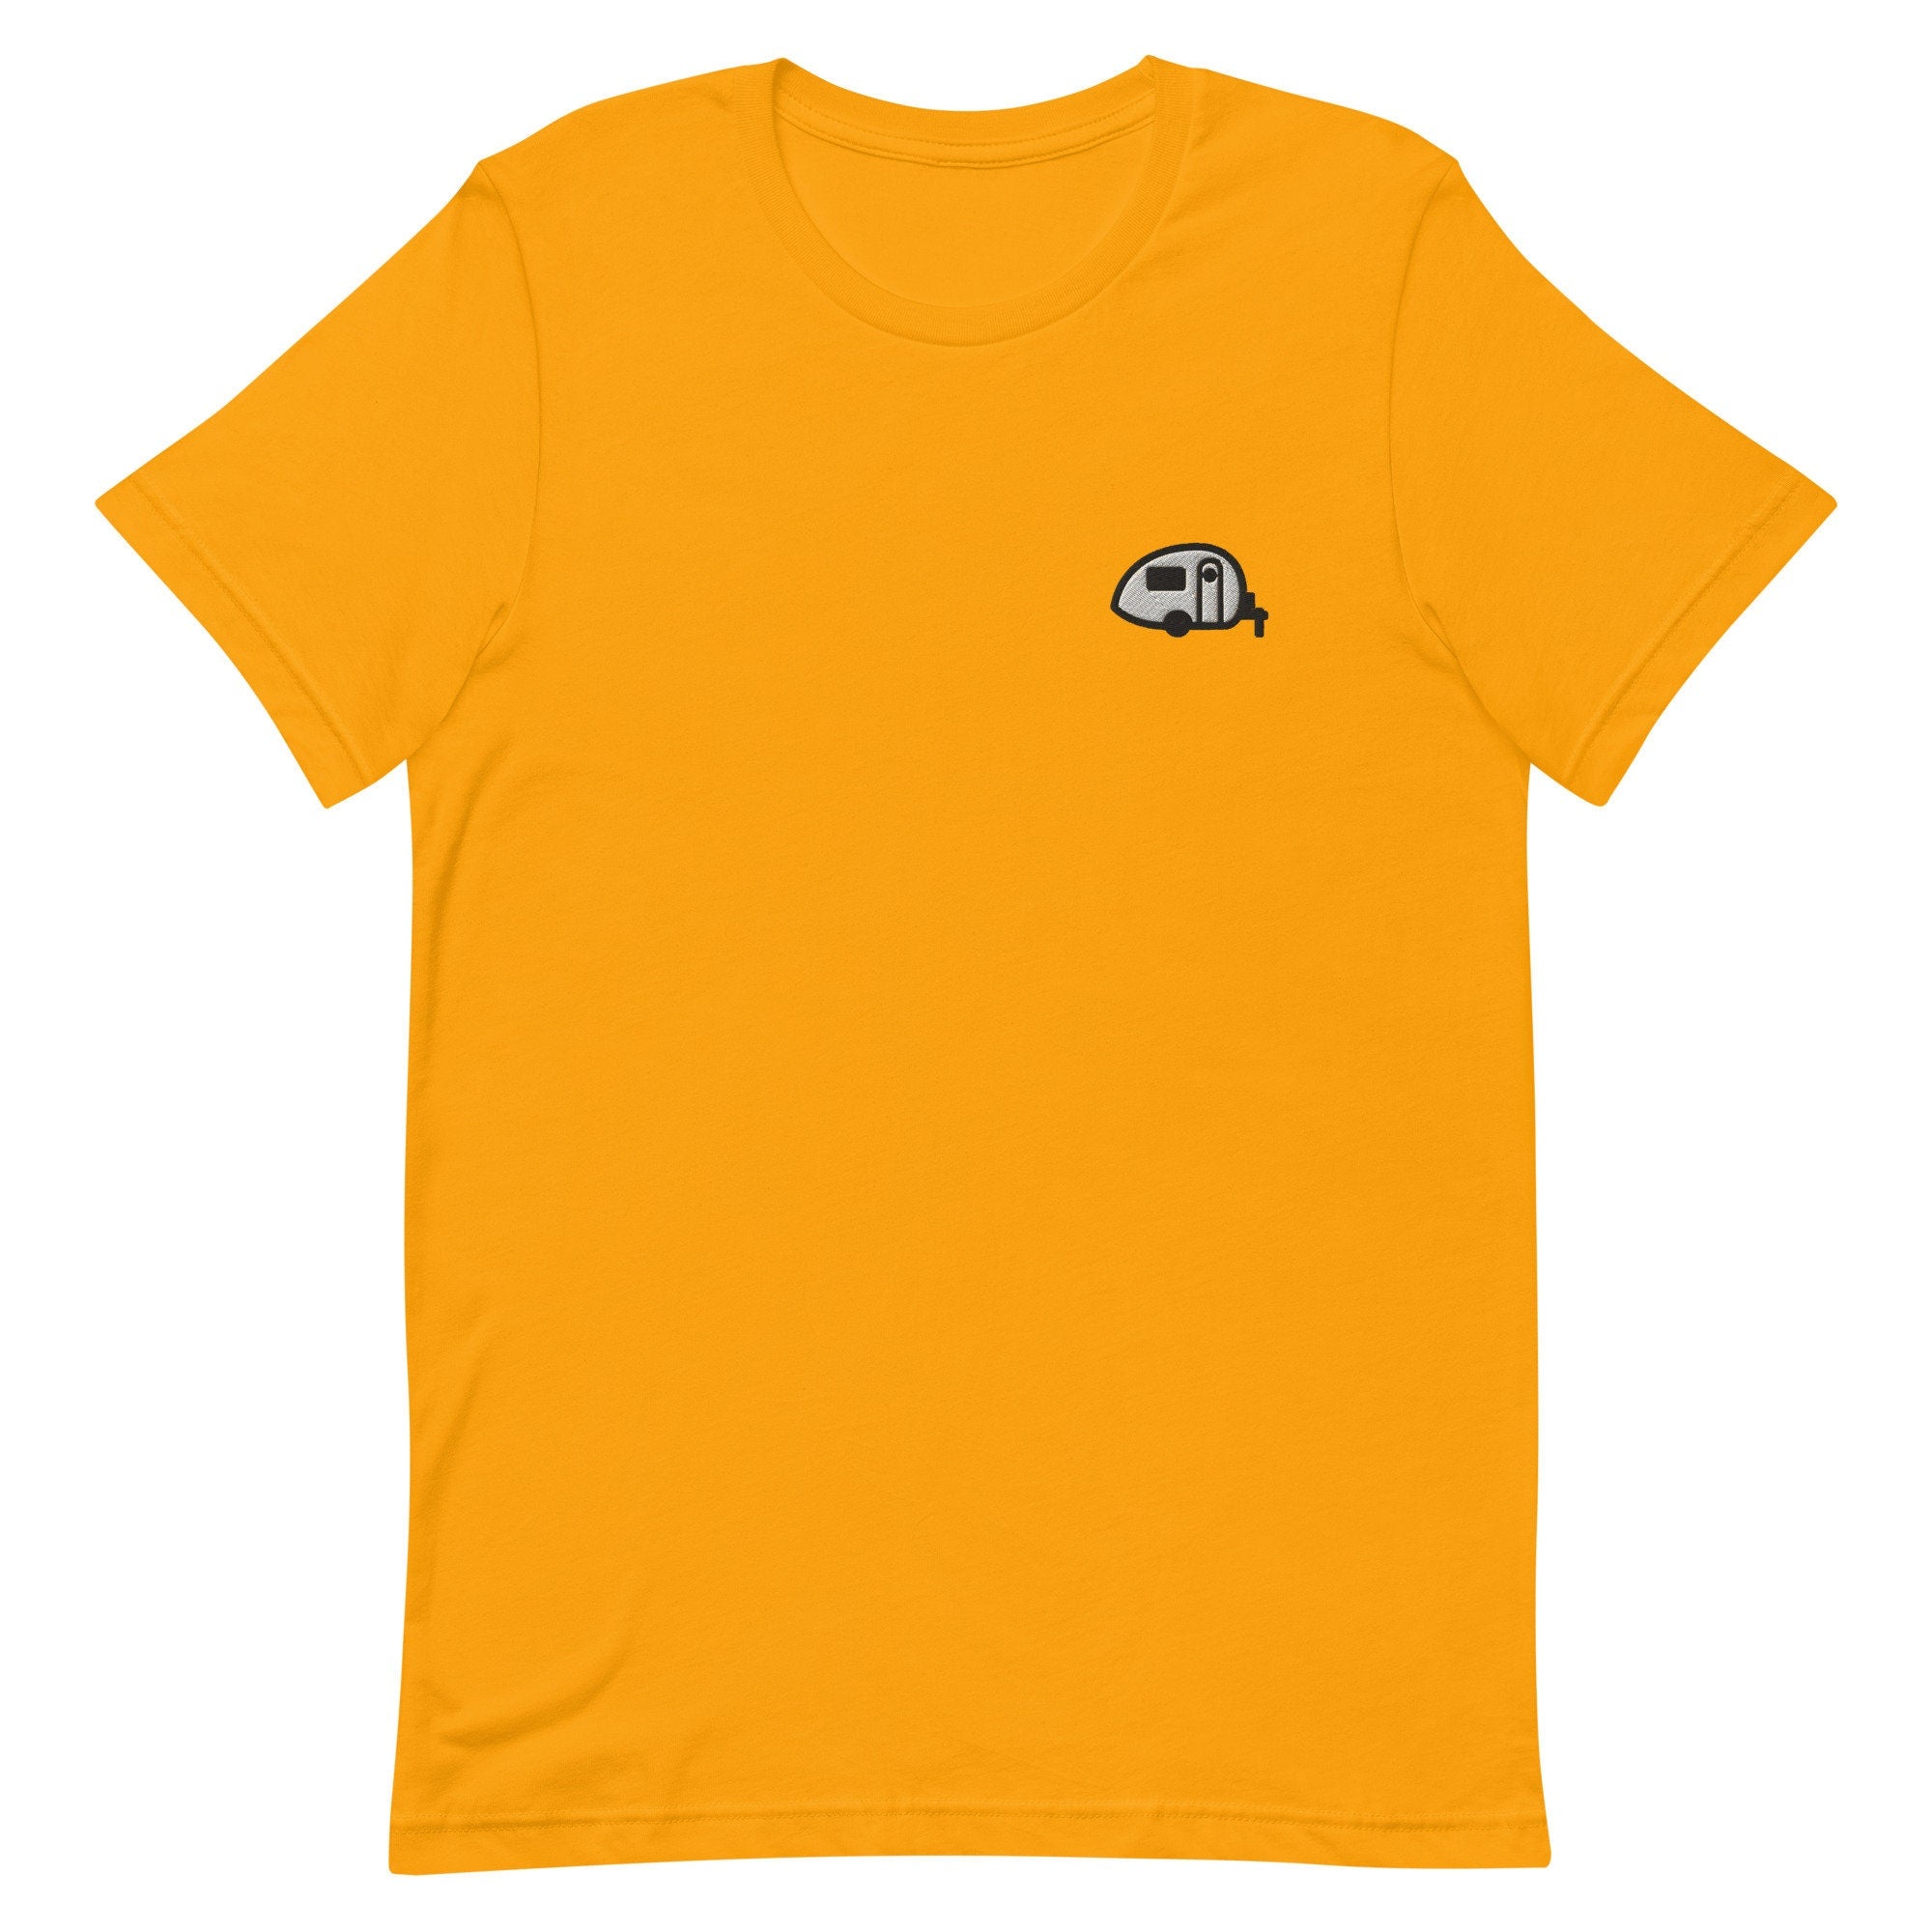 Teardrop Trailer Premium Men's T-Shirt, Embroidered Men's T-Shirt Gift for Boyfriend, Men's Short Sleeve Shirt - Multiple Colors